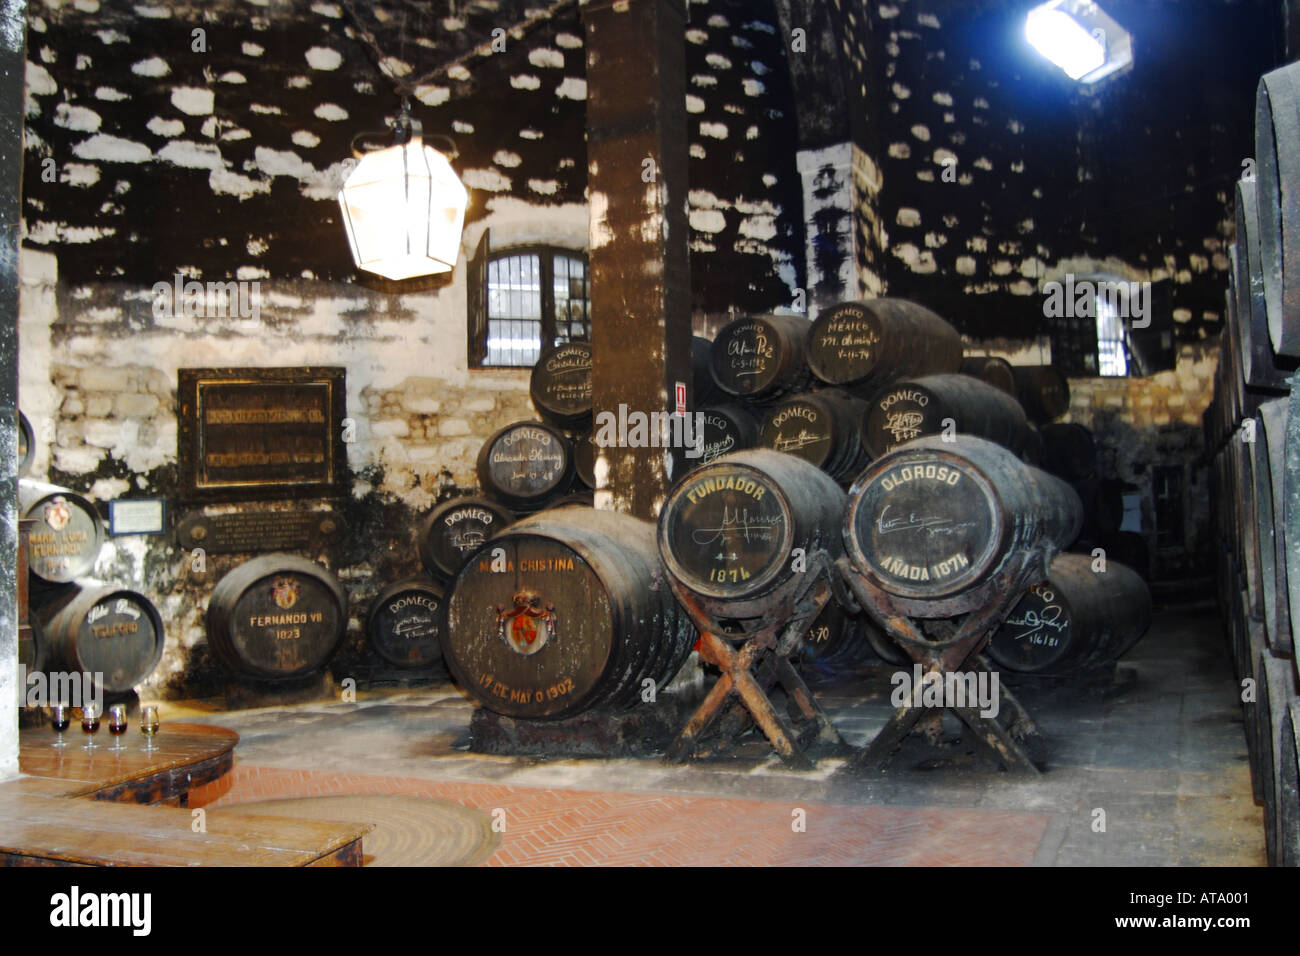 Jerez de la Frontera Jerez Destillerie Domecq barrals en bodega showroom de madera Foto de stock